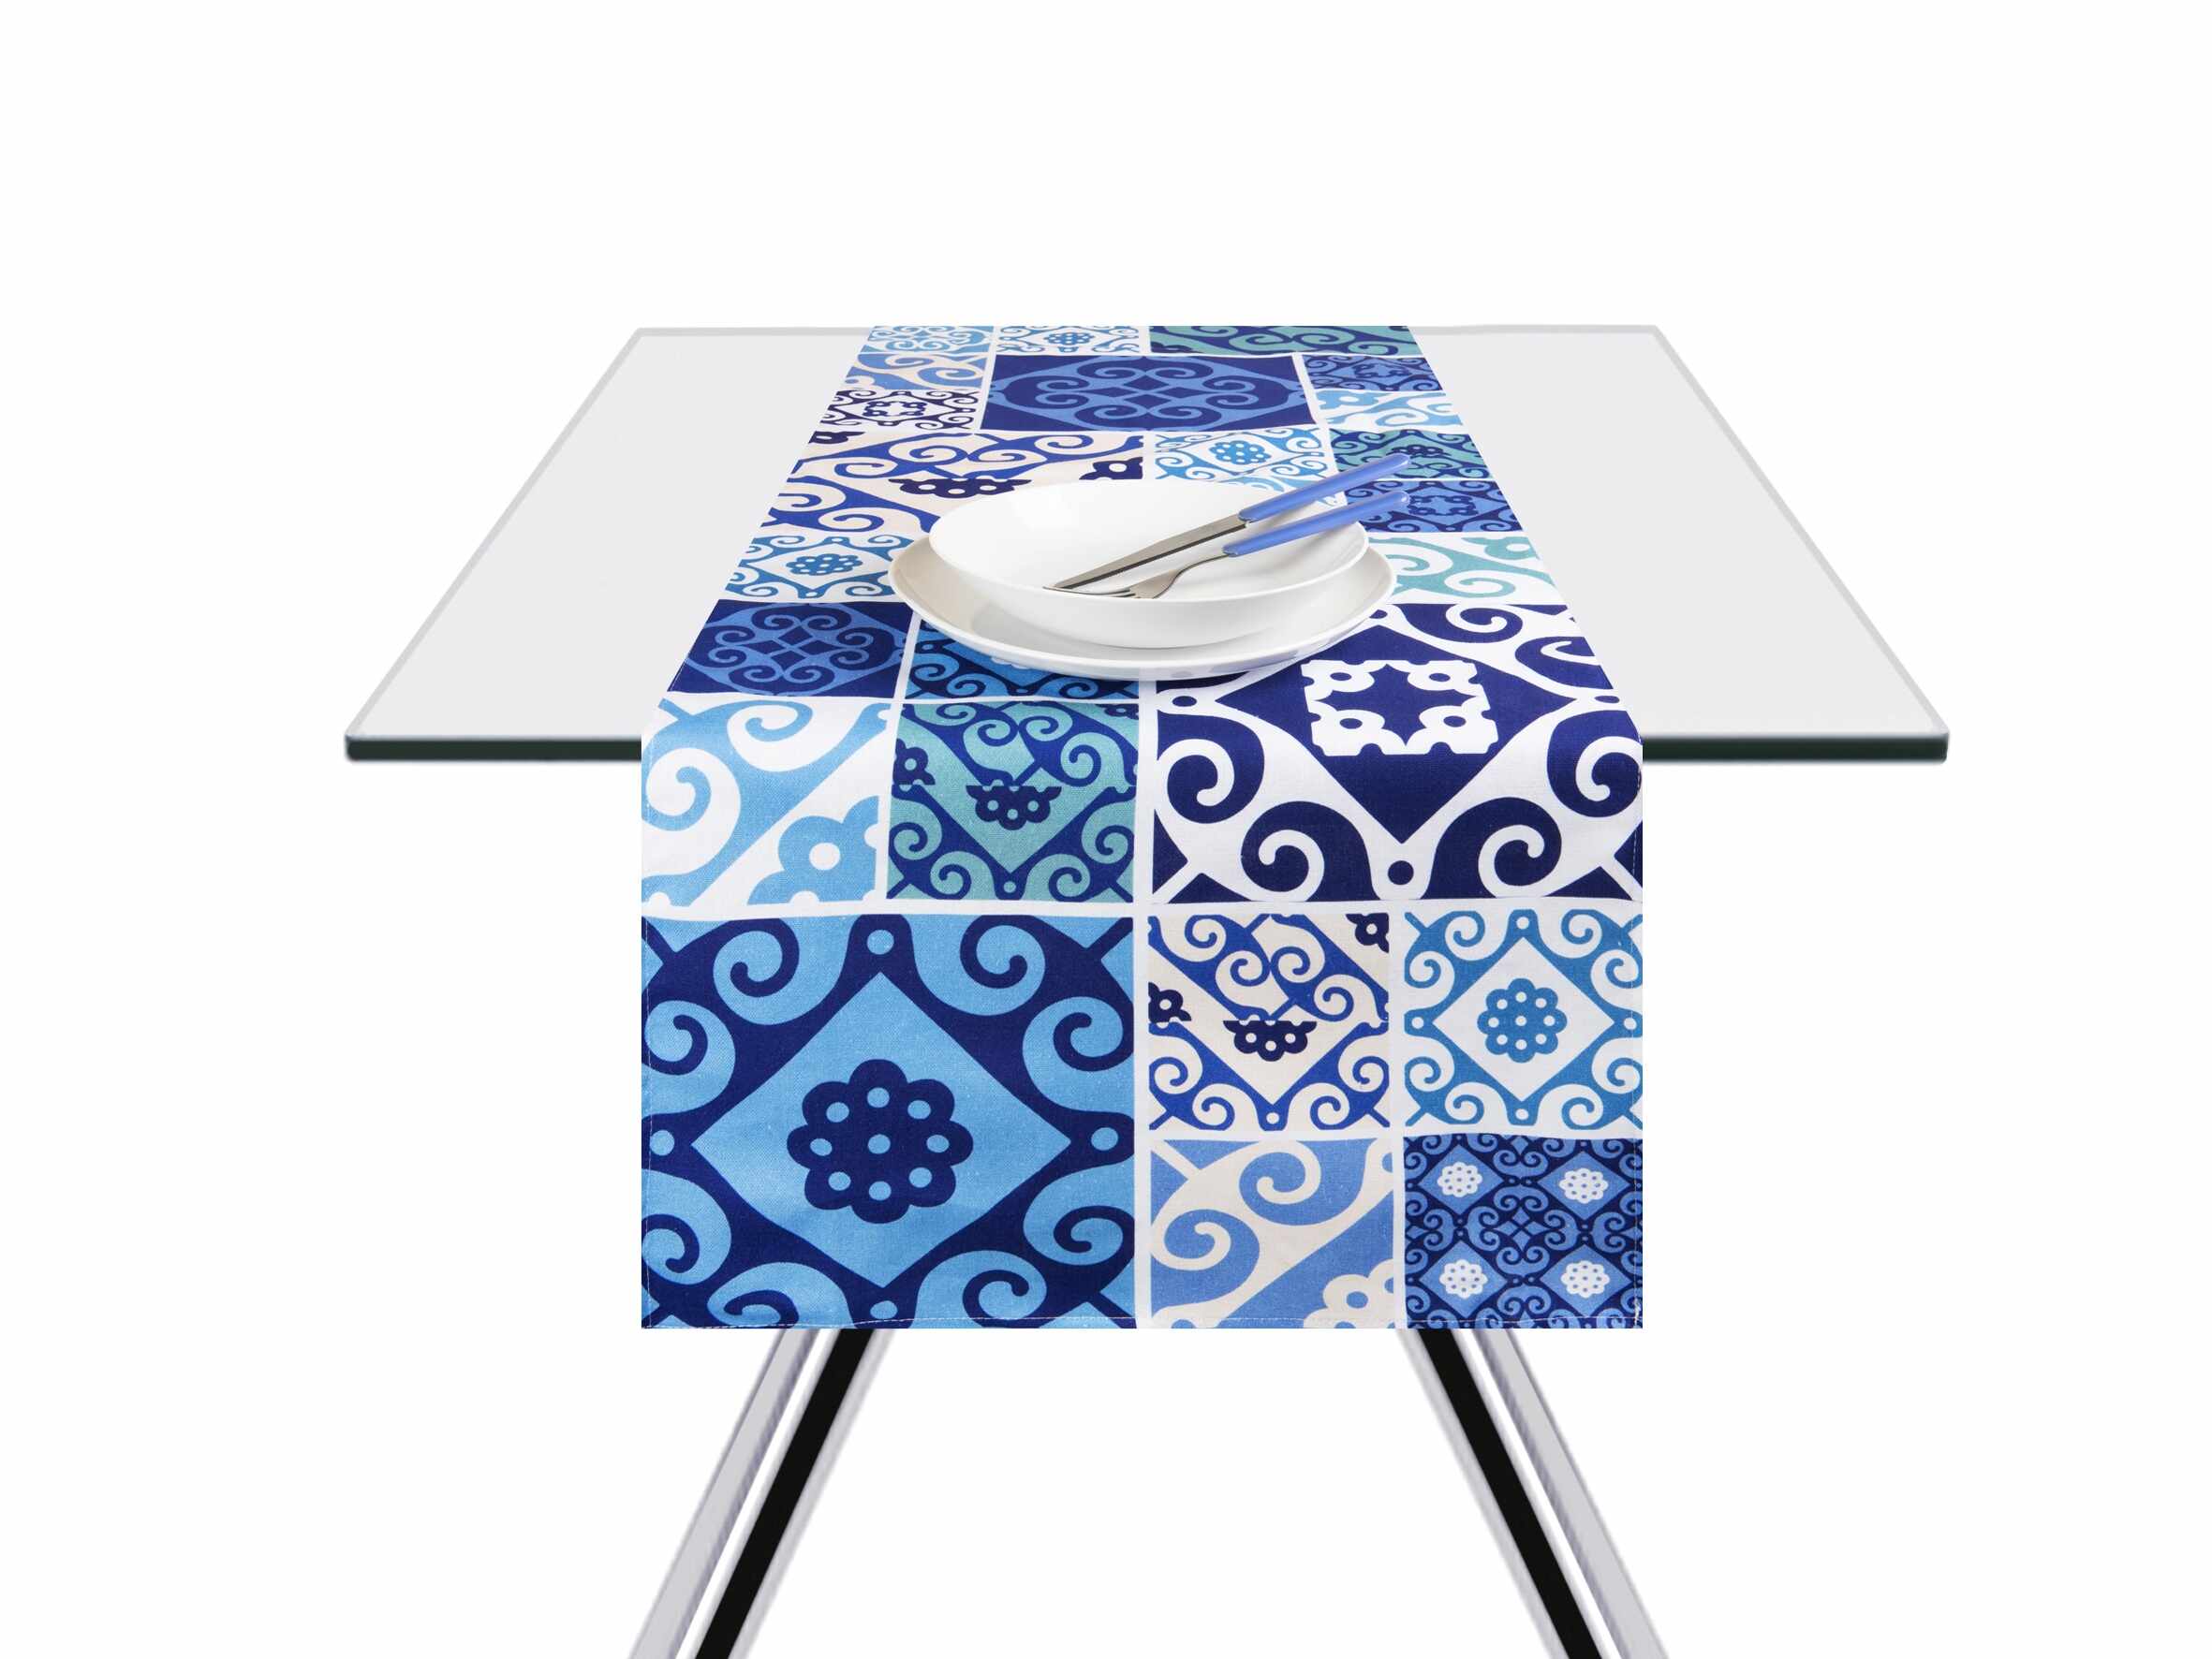 Traversa masa din bumbac, Maiolica Albastru, 45 x 140 cm